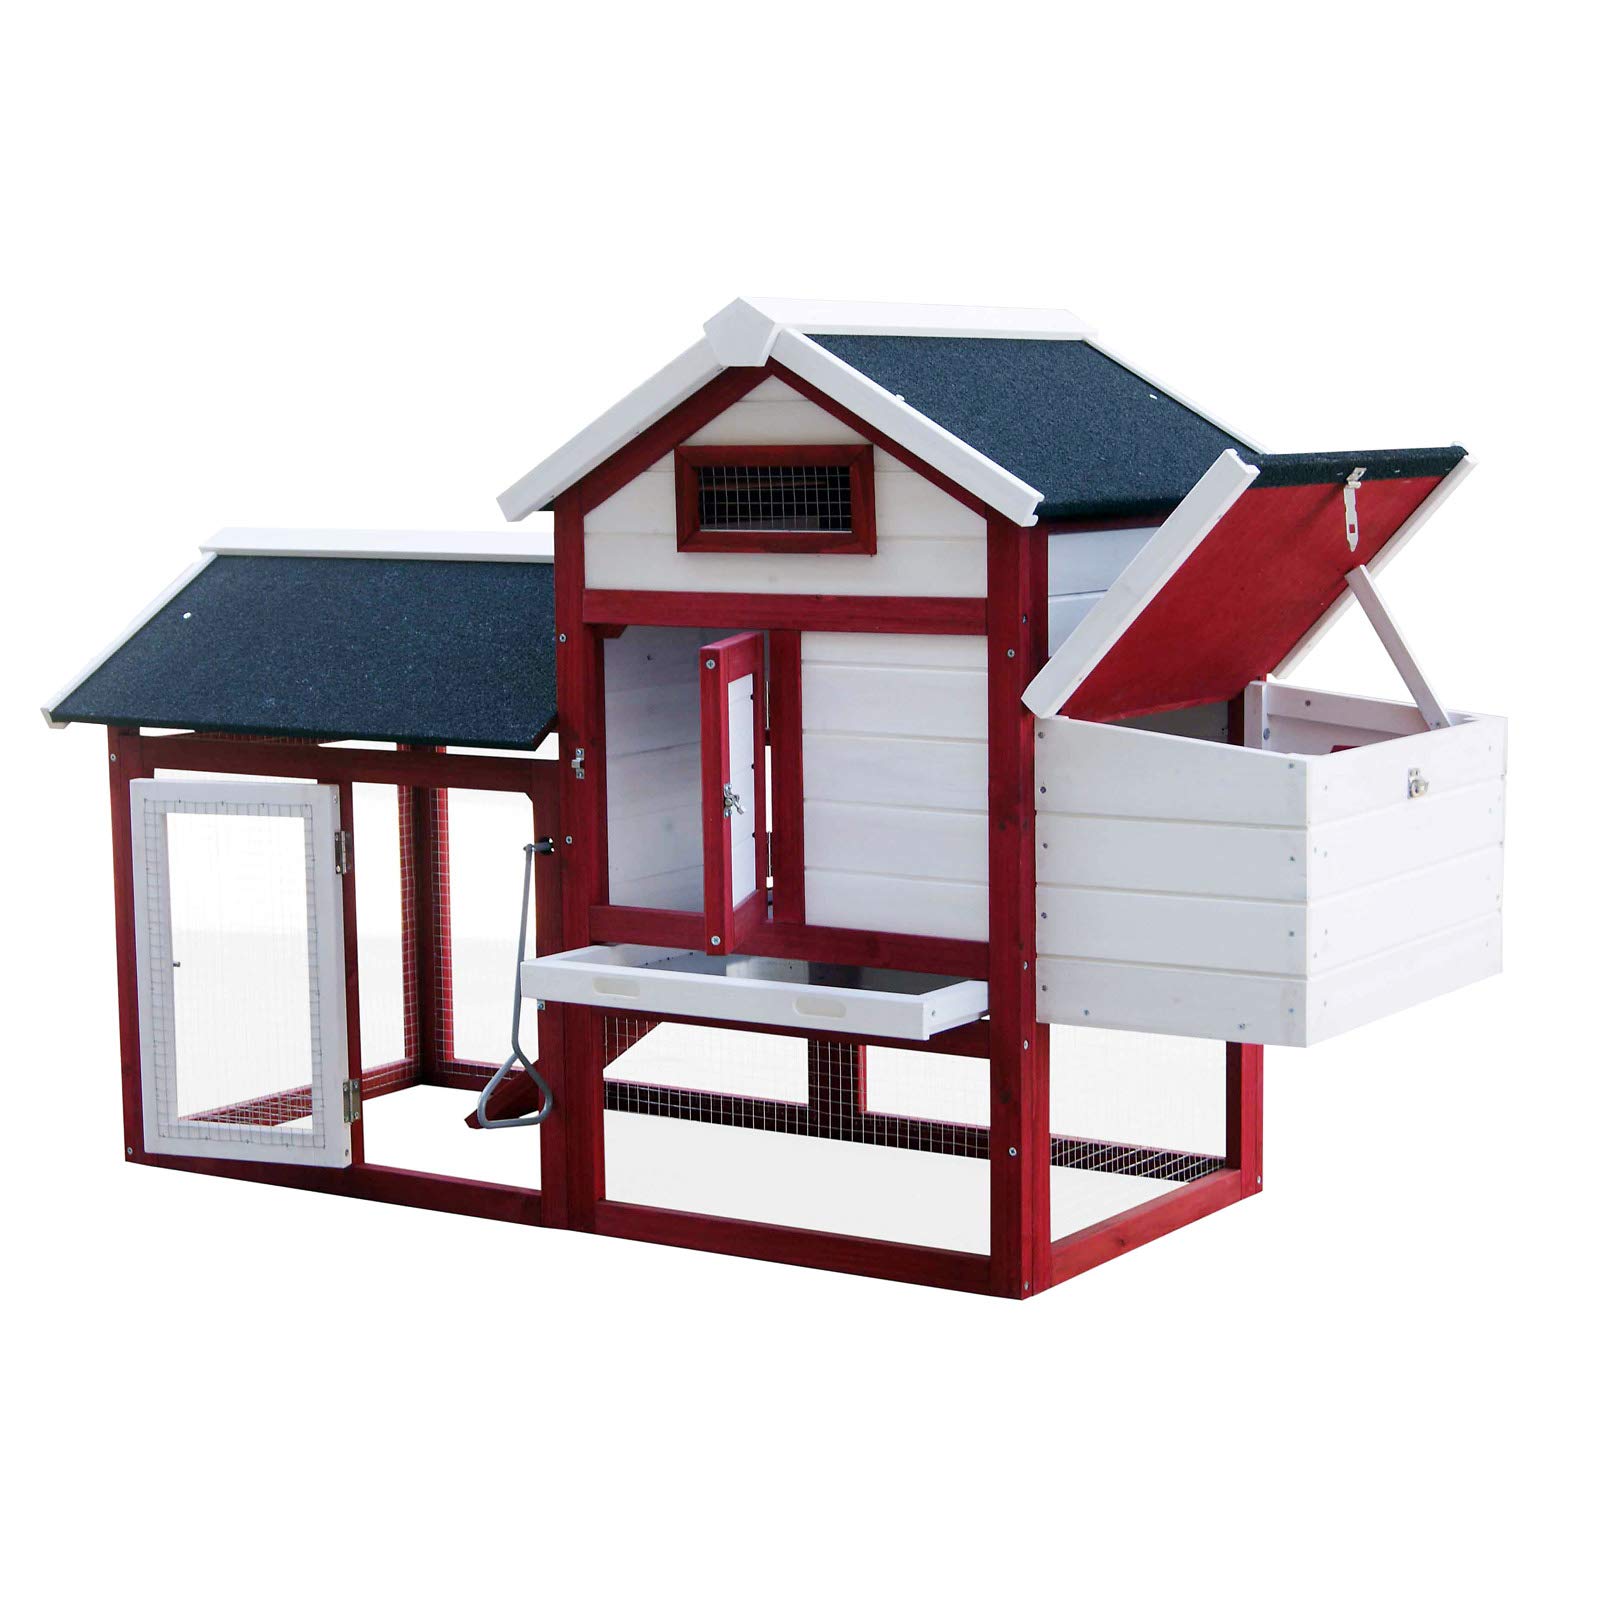 Hühnerstall mit Nistkasten & Freilauf, Rot-Weiß, Haus mit ausziehbarem Boden